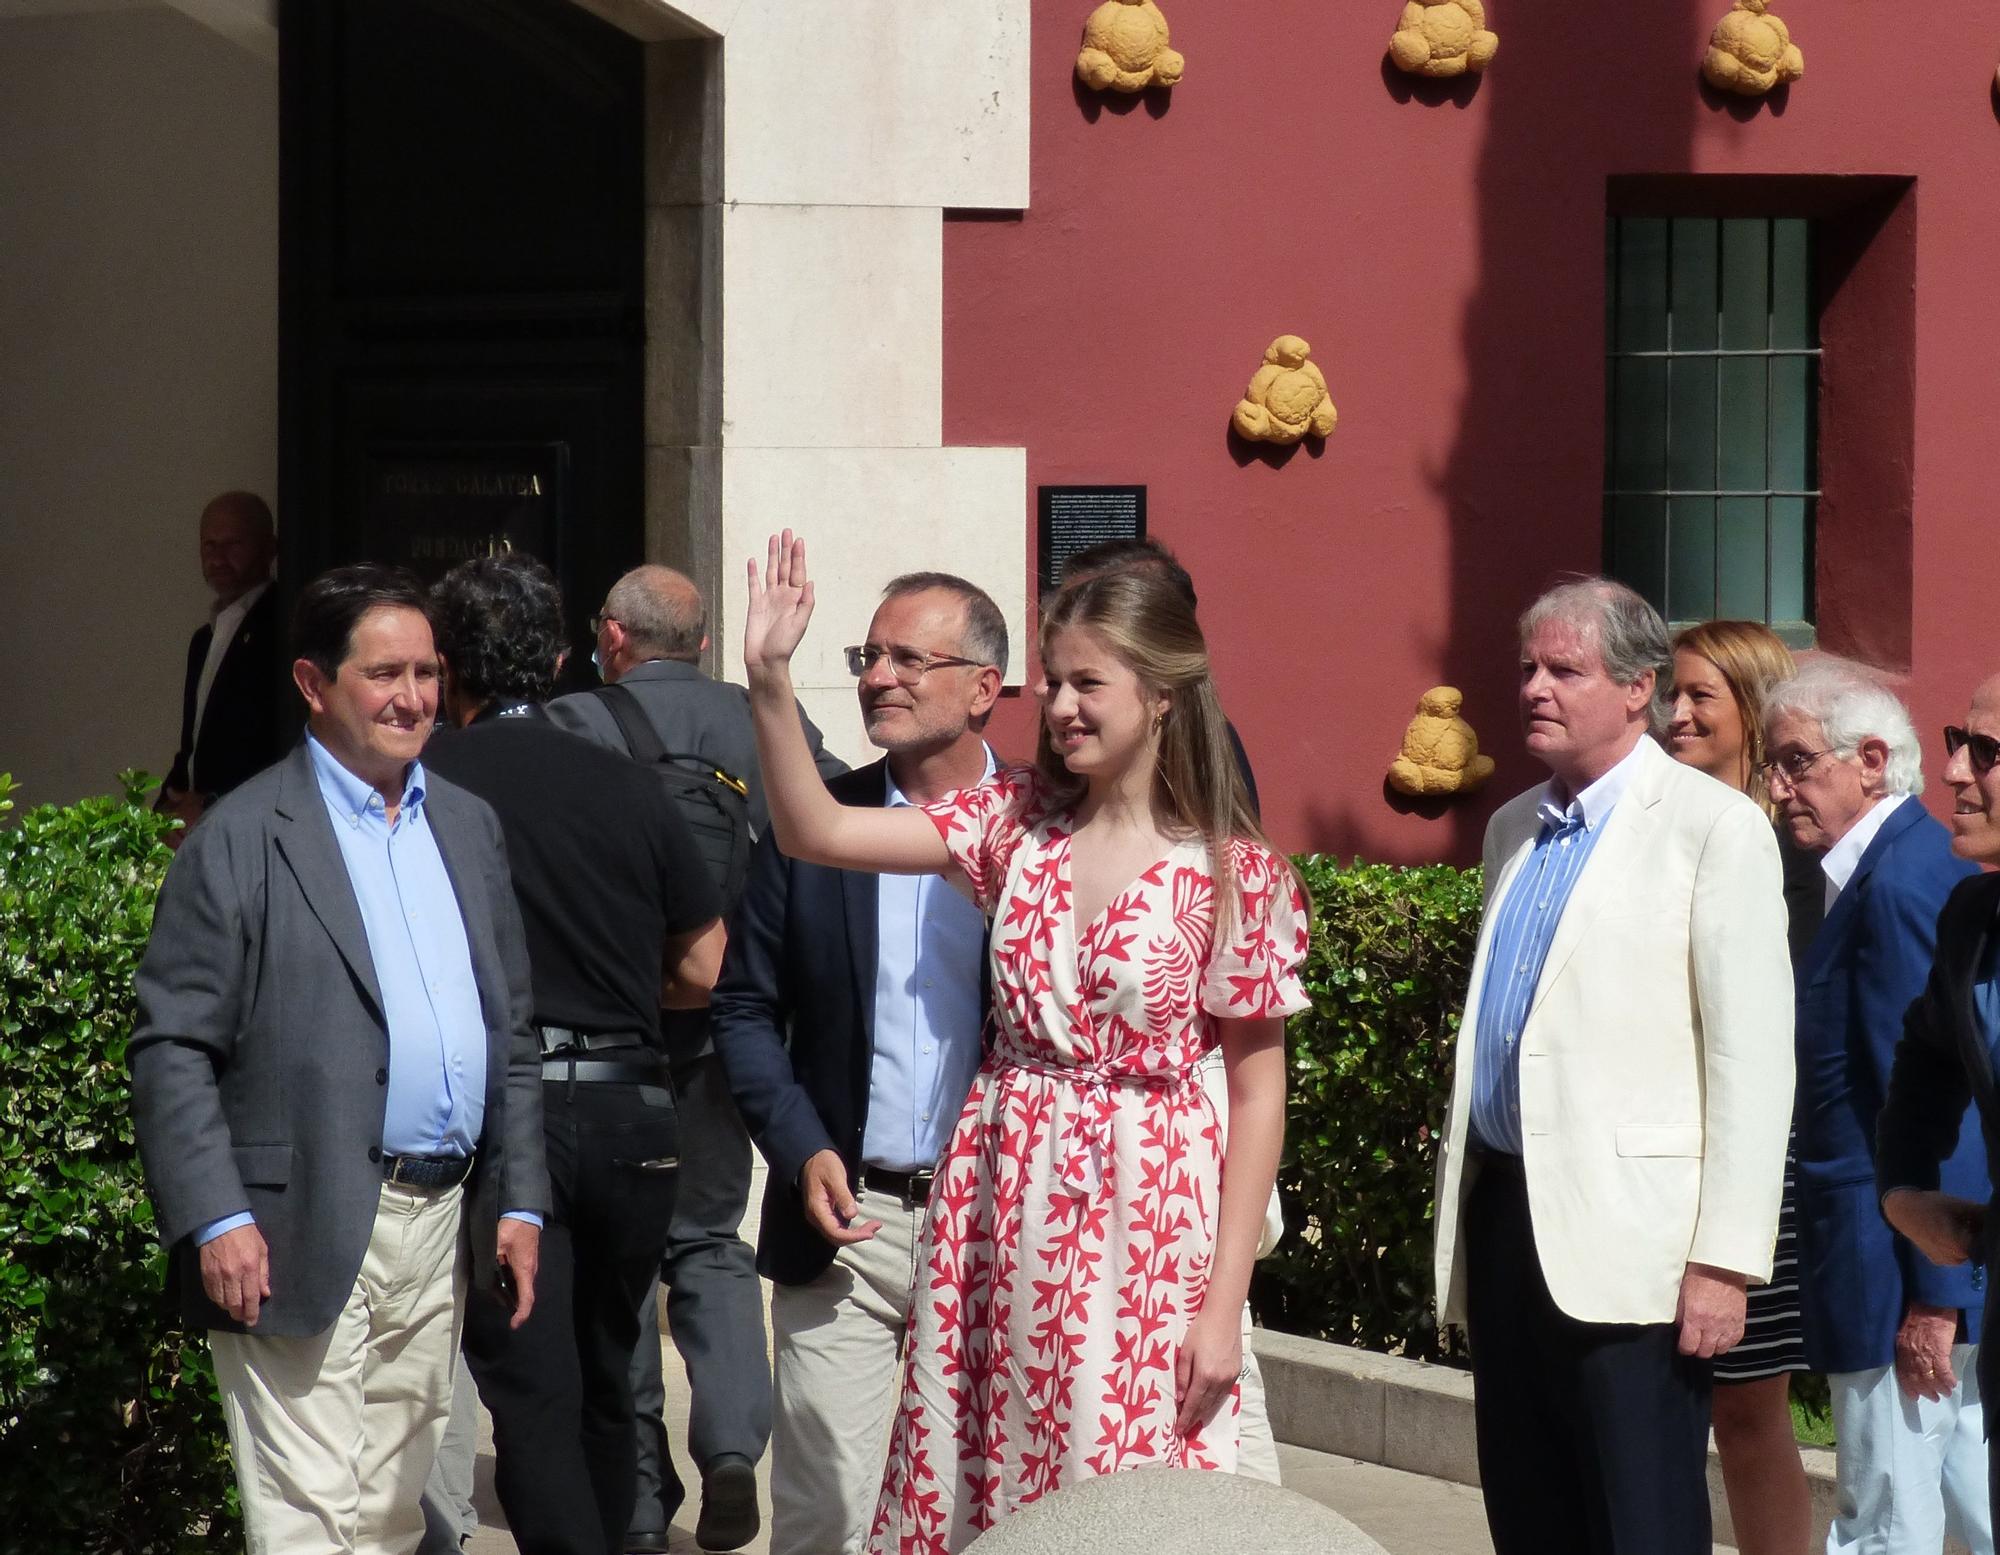 La princesa Elionor i la infanta Sofia rebudes a Figueres amb manifestants favorables i contraris